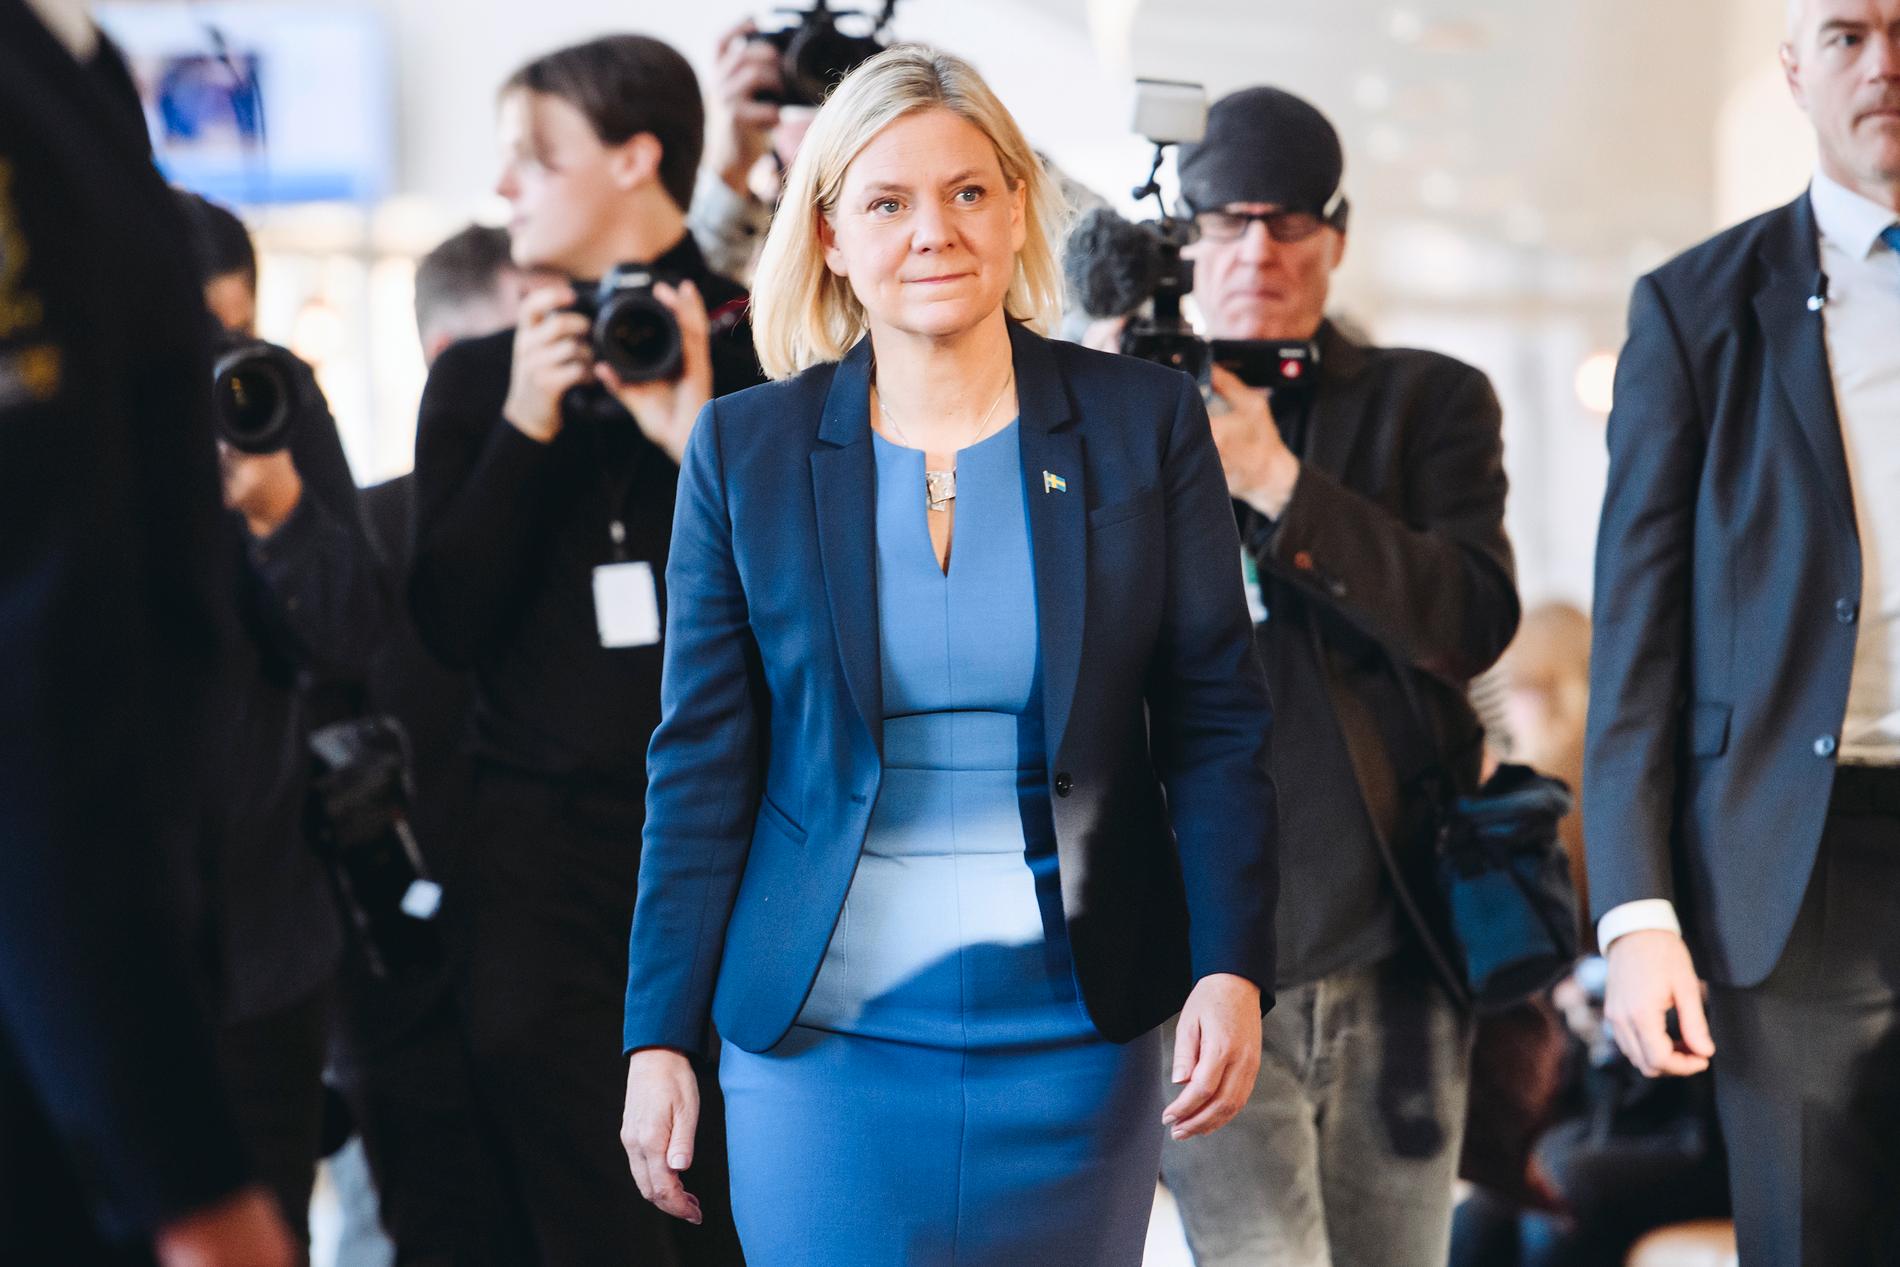 S-ledaren Magdalena Andersson efter att ha blivit vald till statsminister i onsdags. Arkivbild.